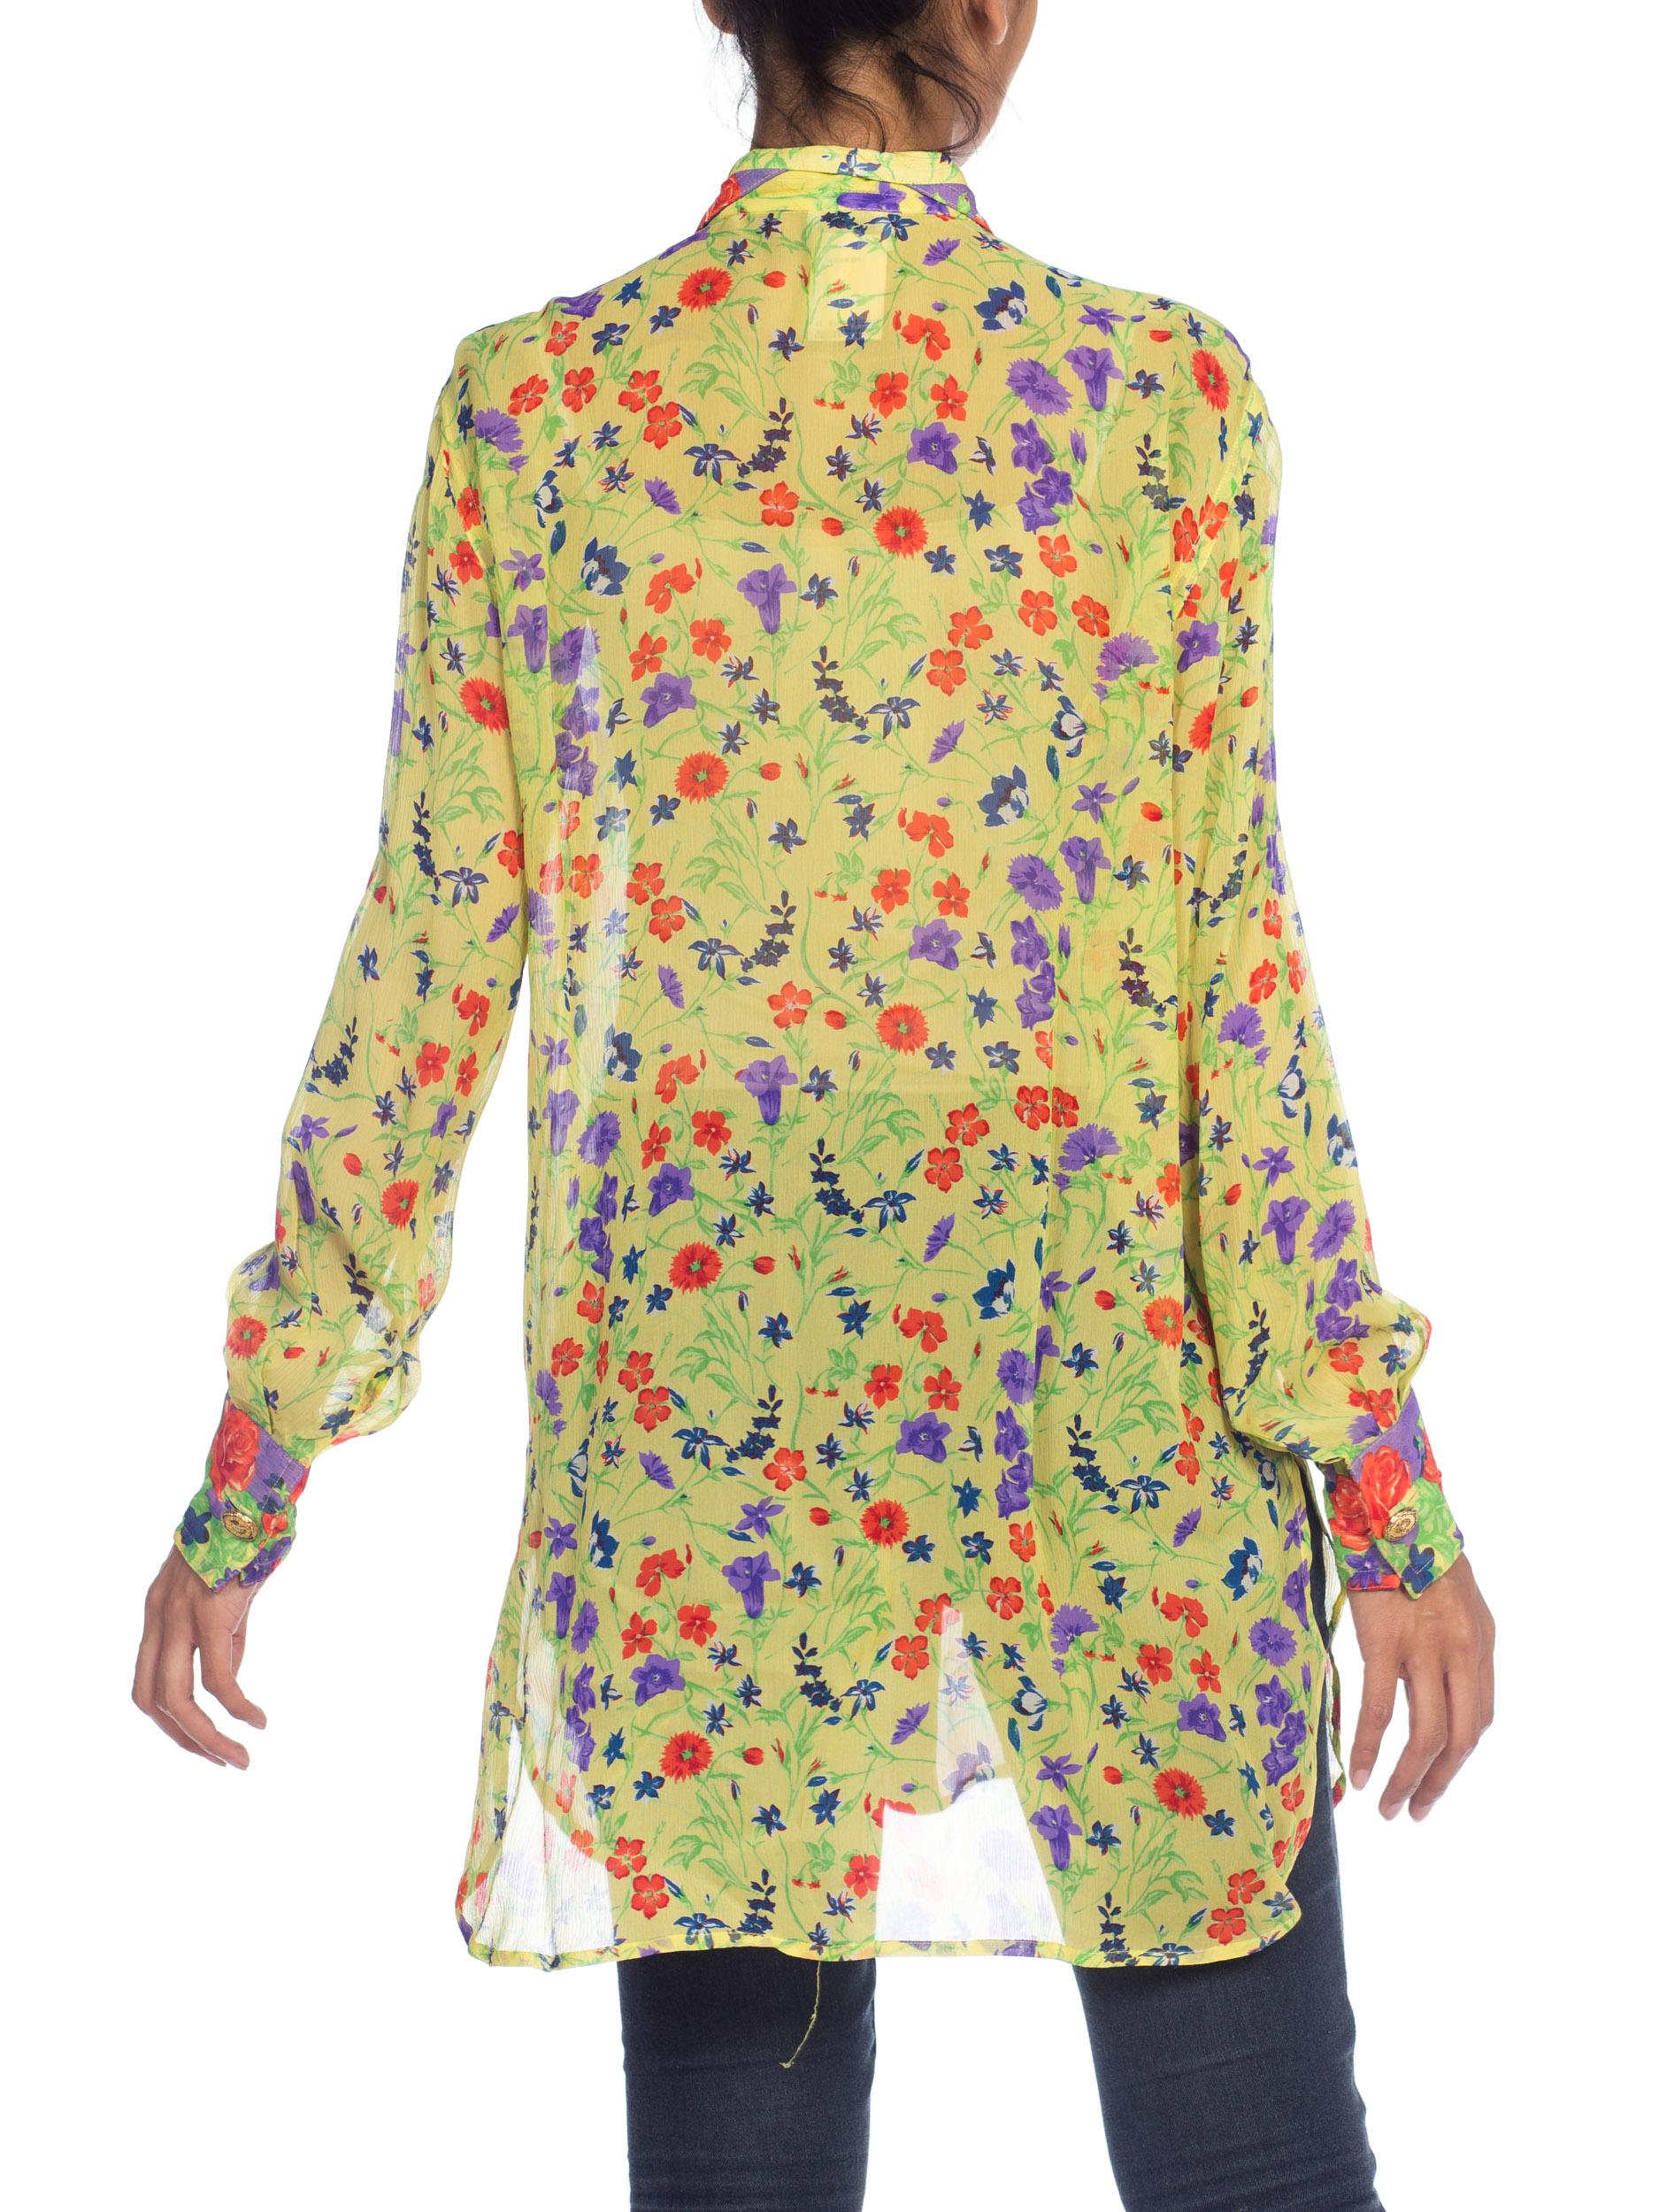 Women's 1990S  GIANNI VERSACE Floral Printed Silk Chiffon Sheer Oversized Shirt Sz 42